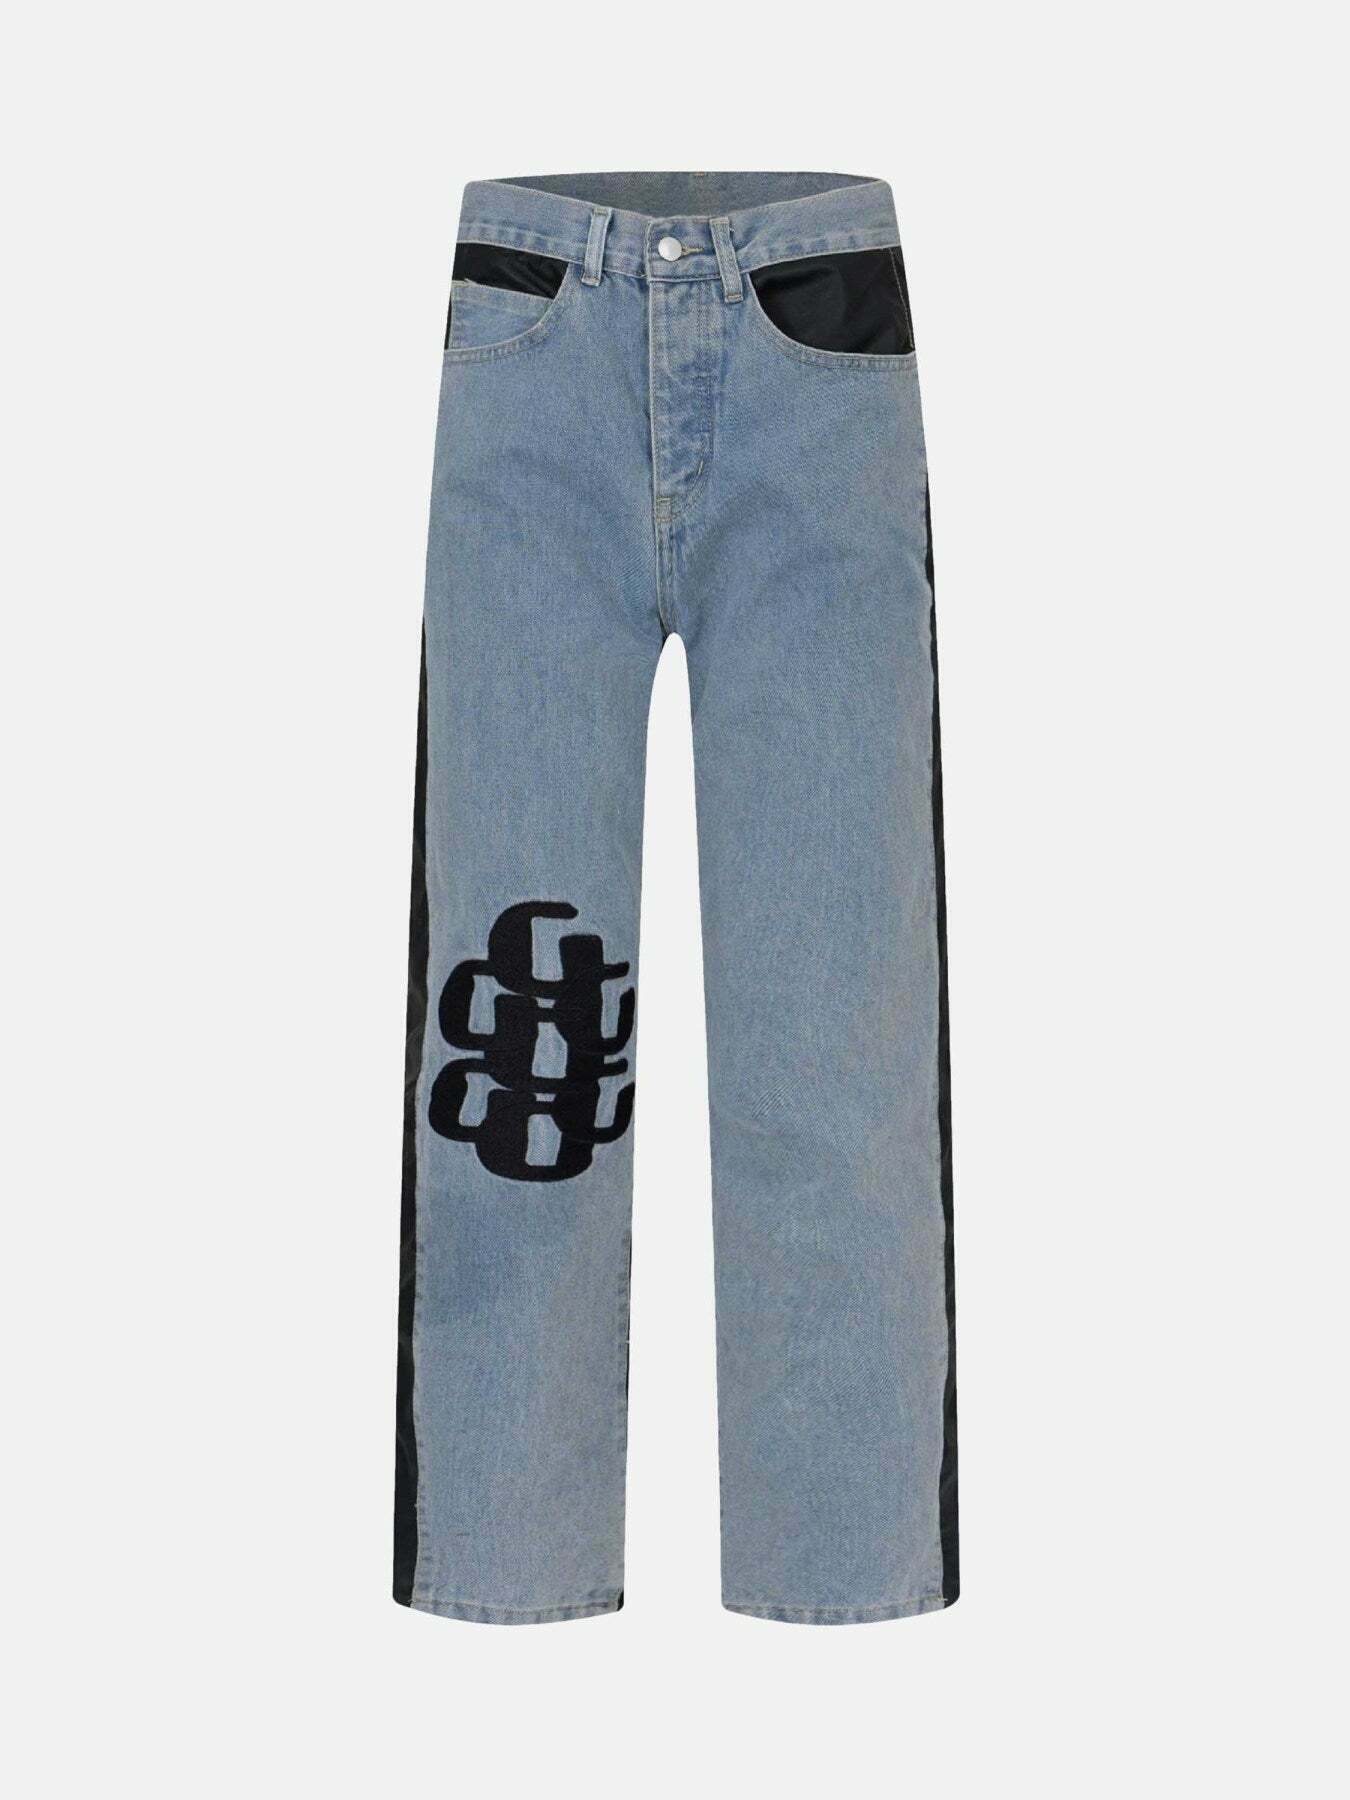 Patchwork Denim Jeans: Trendy Gen Z K-POP Streetwear for Y2K Fashion